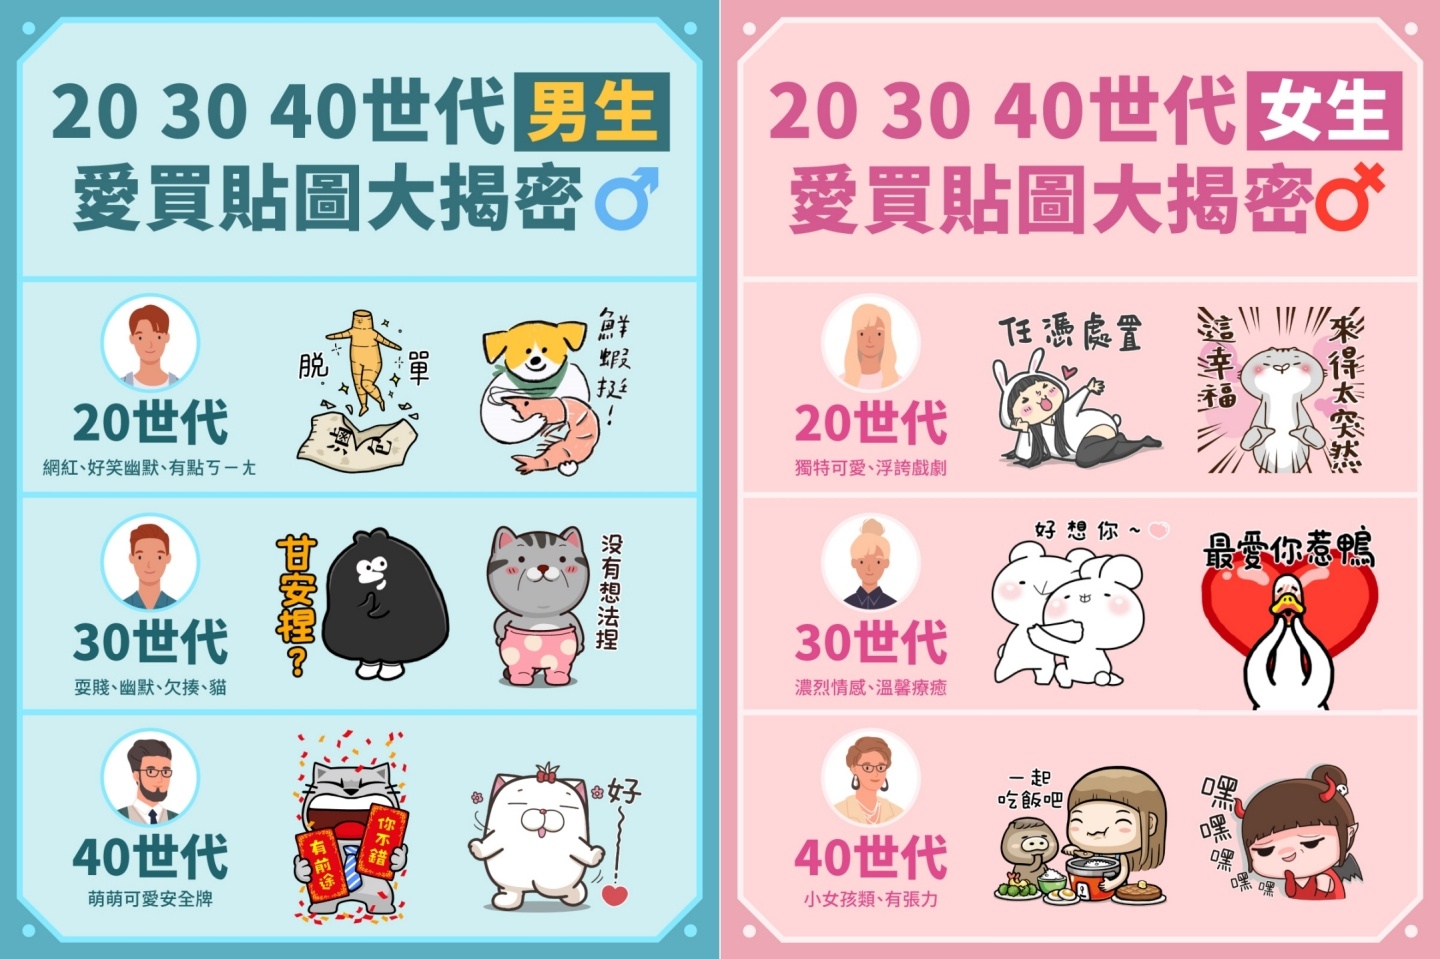 臺灣人超愛貼圖！年均下載量是日本用戶的 2 倍 最愛送貼圖的族群是 20 幾歲的男性